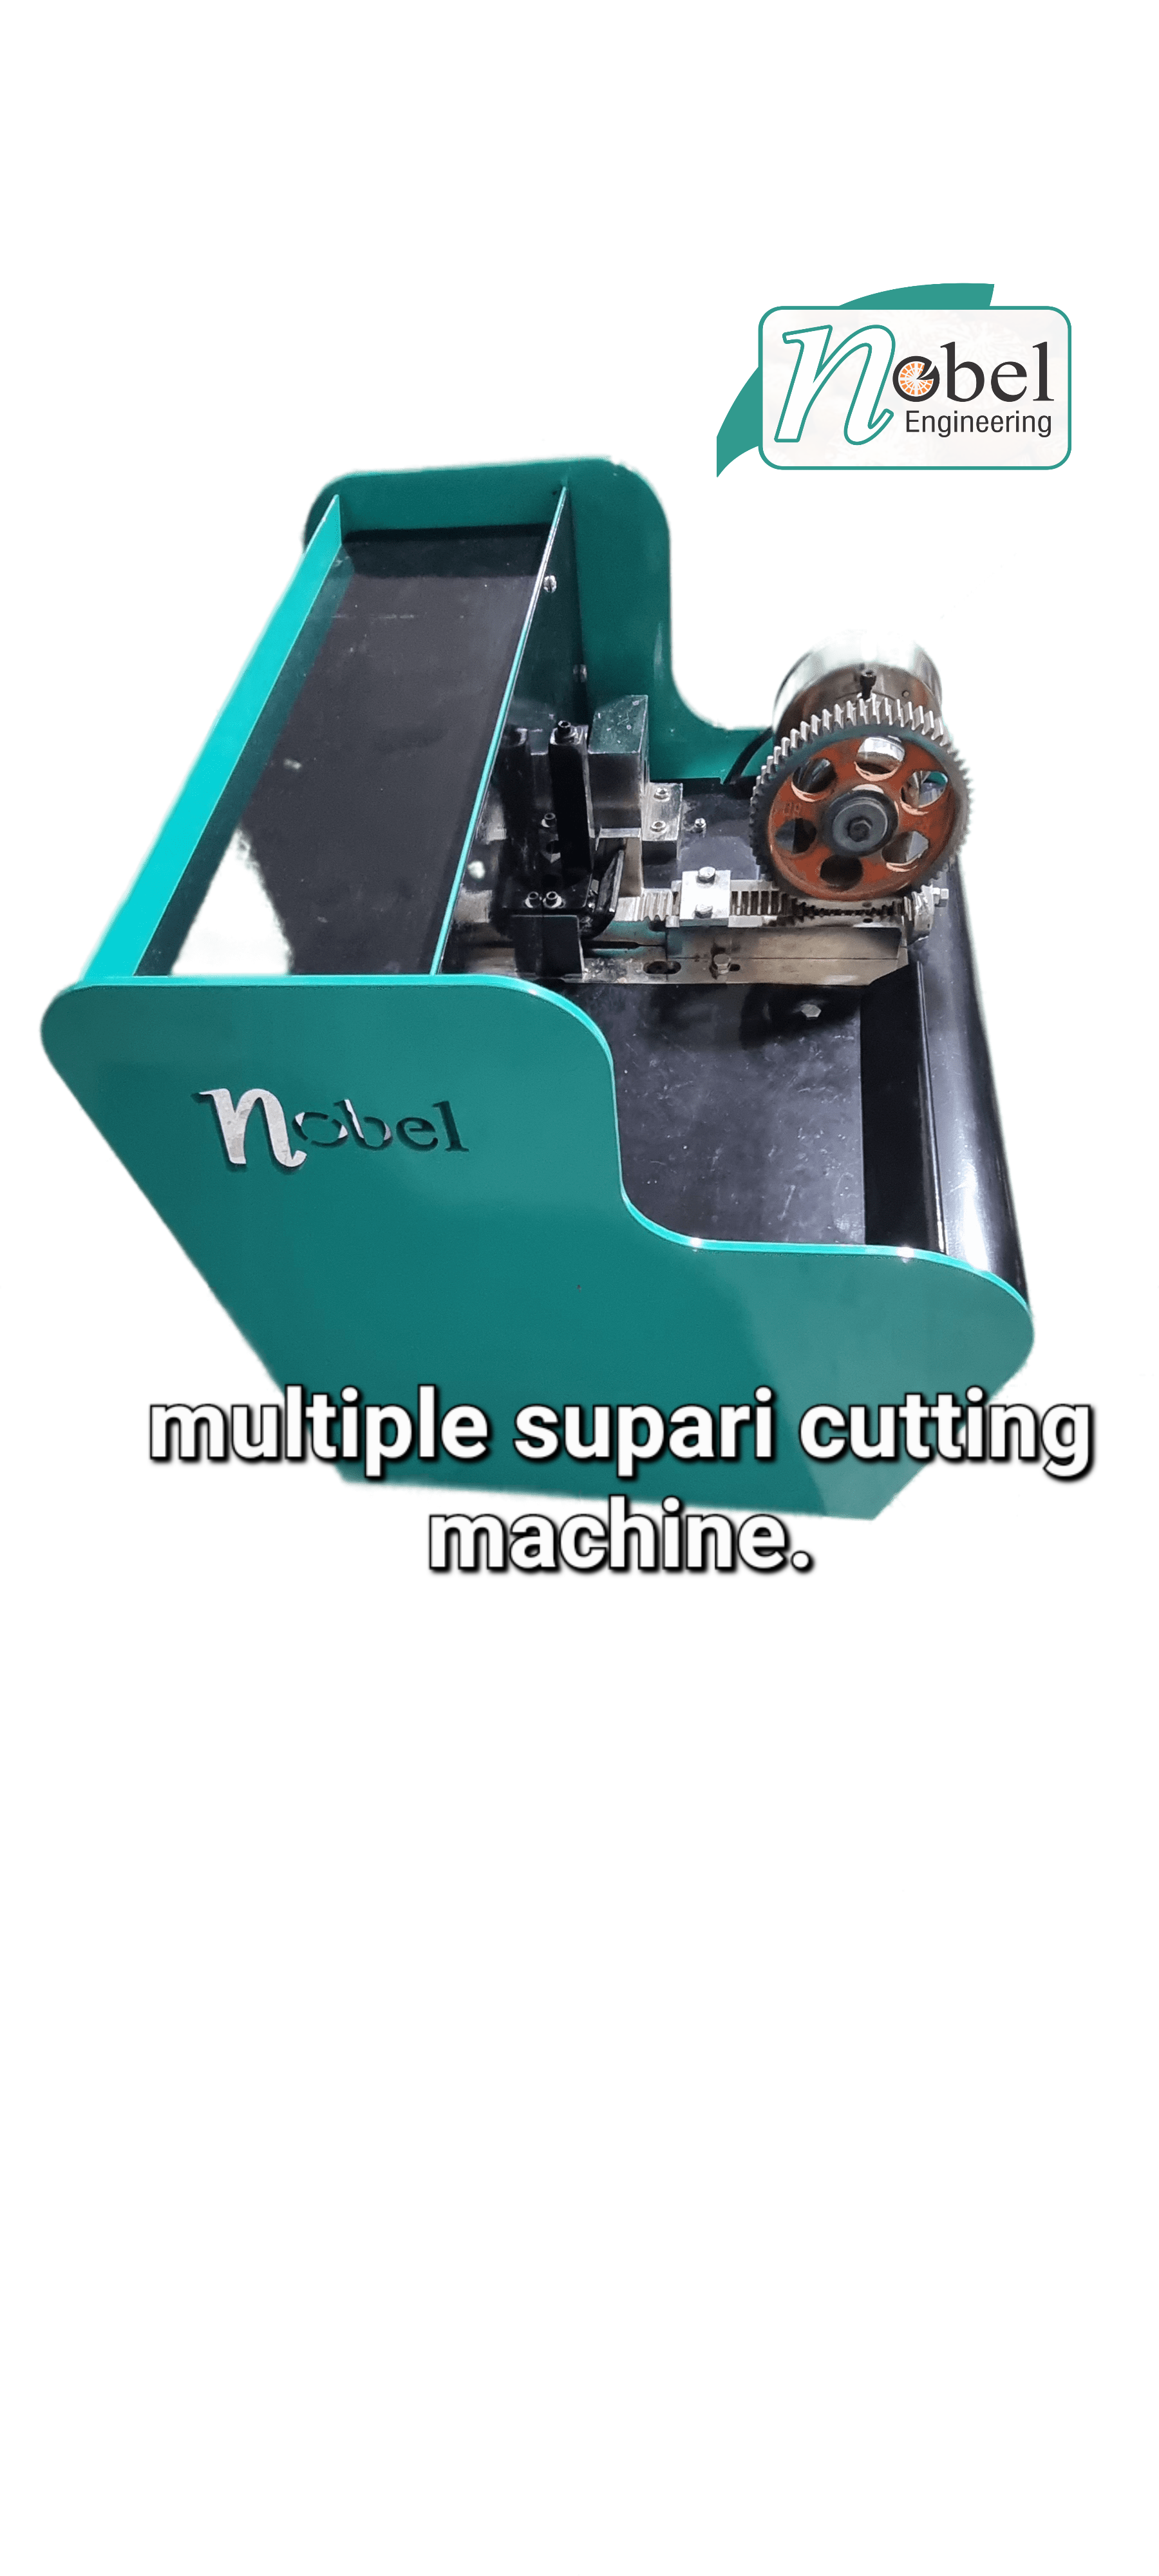 Nobel Supari Cutting Machine